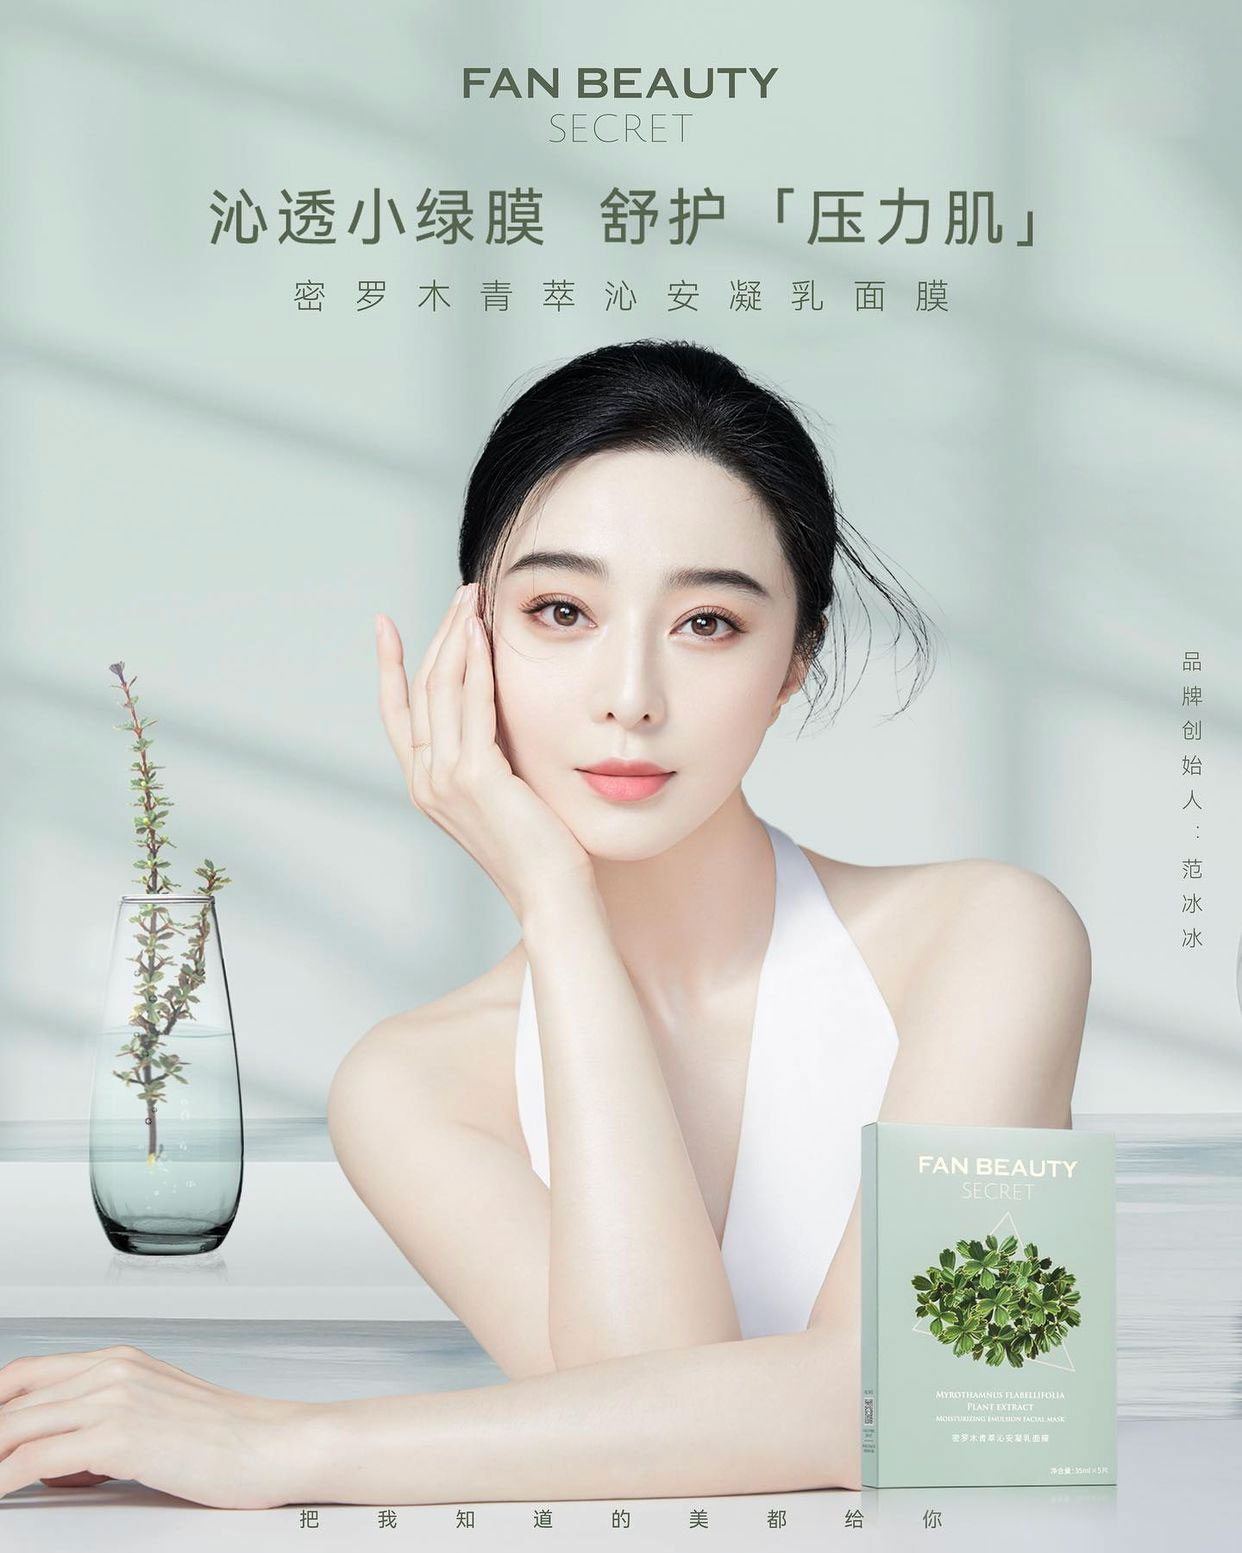 Fan Beauty Secret, thương hiệu mỹ phẩm của Phạm Băng Băng